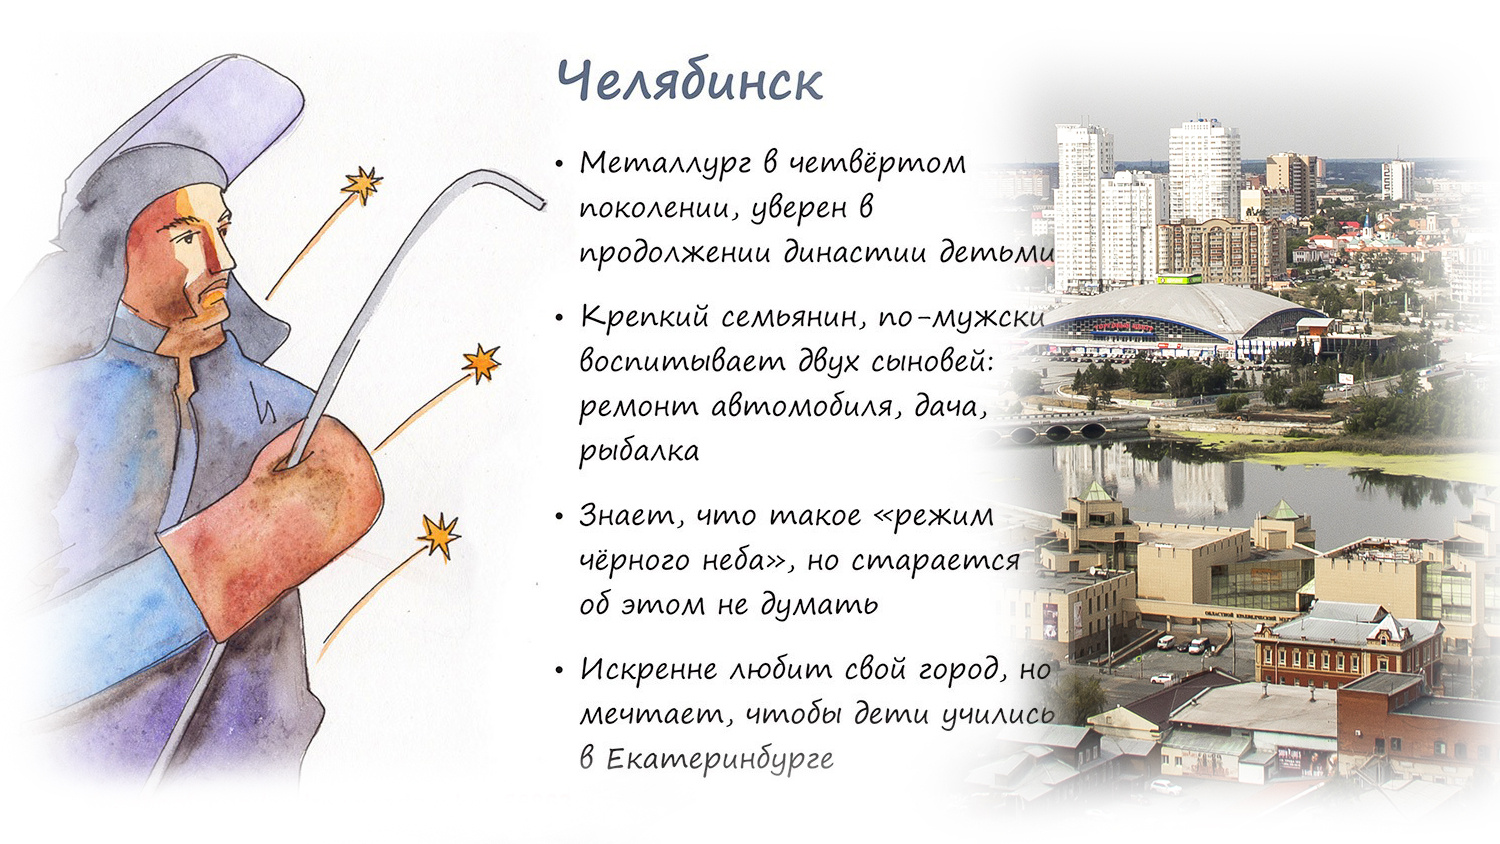 Художница нарисовала типичных жителей городов России. Догадайтесь, кто представляет Челябинск